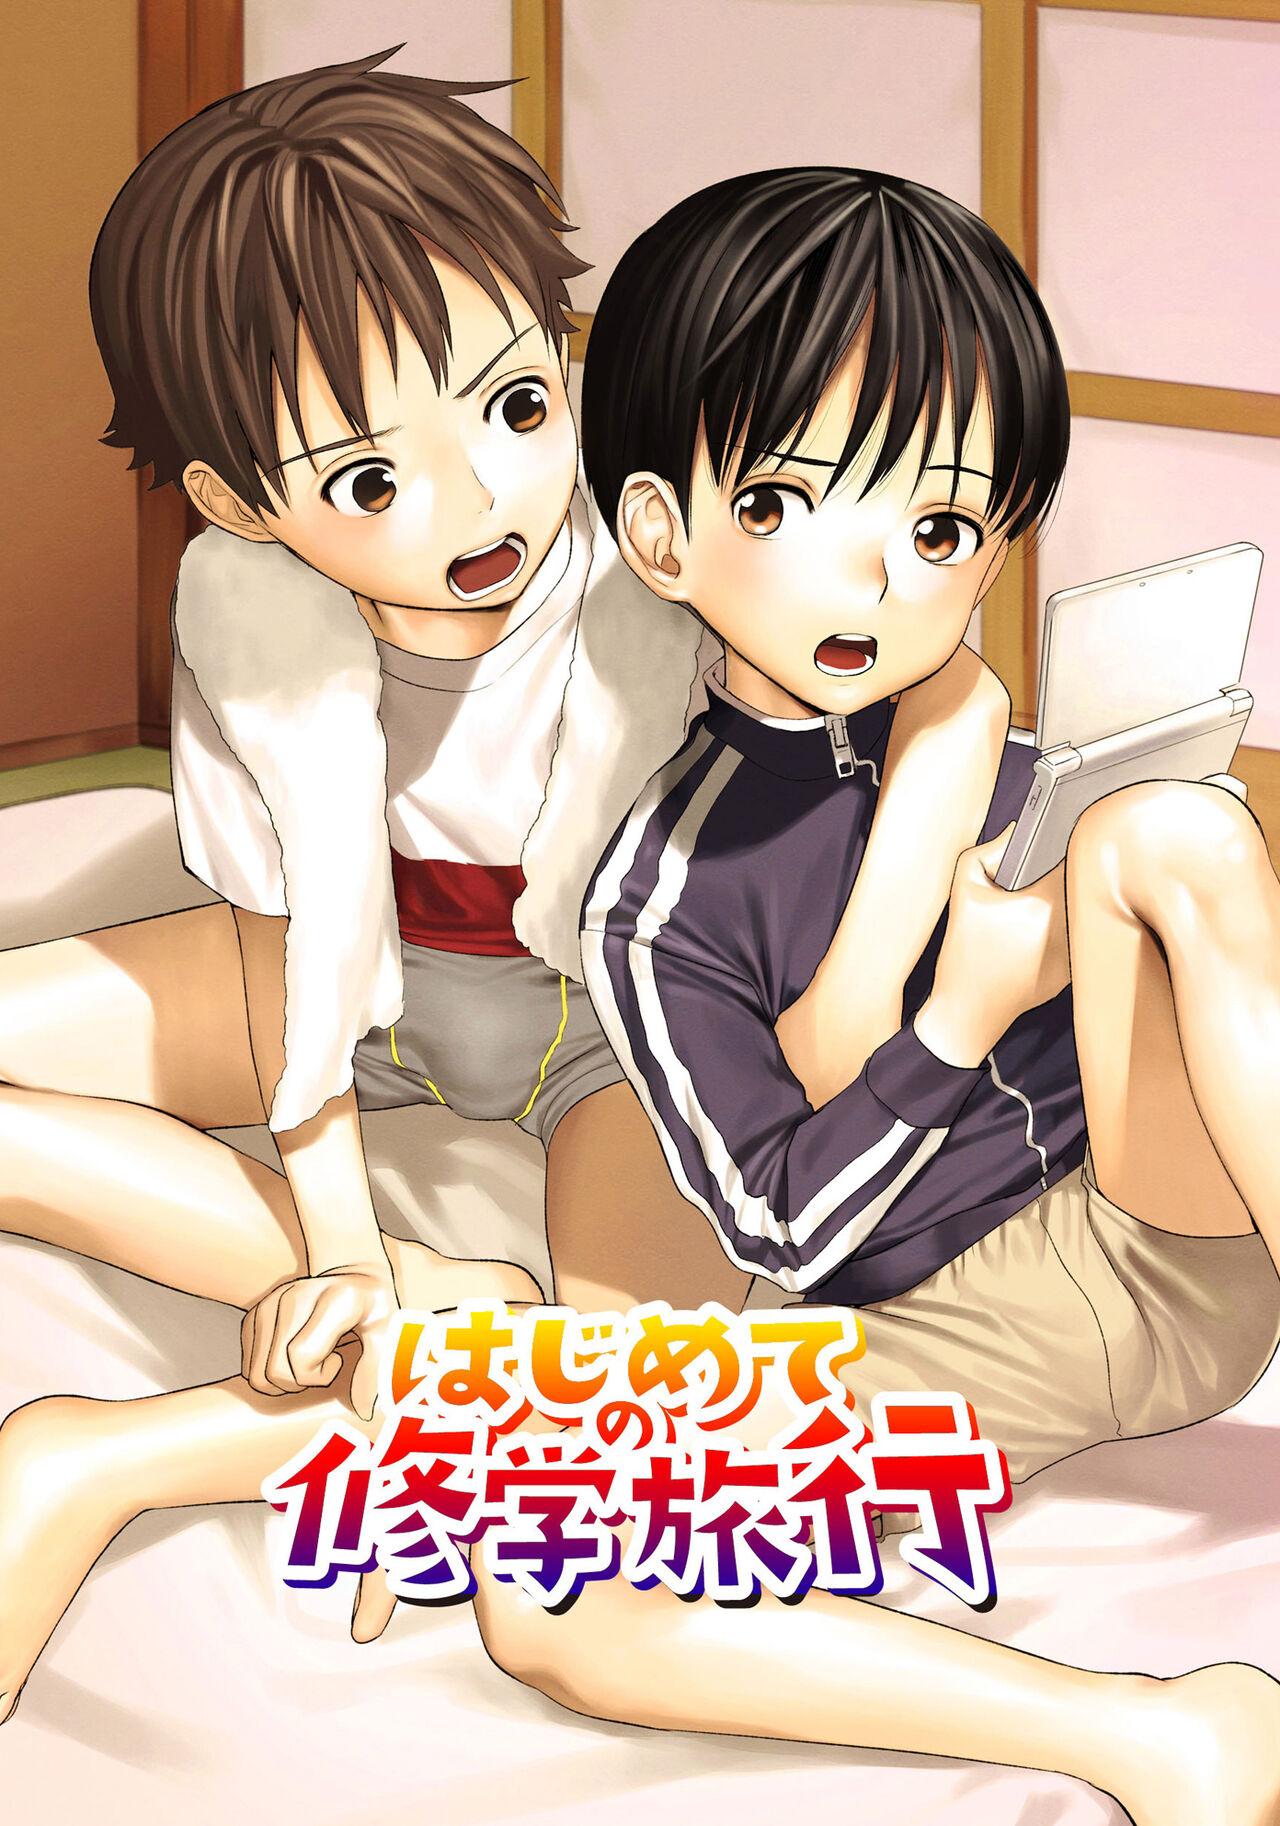 Hentai Shounen Kyoukasho - HENTAI BOYS SCHOOLBOOK 123